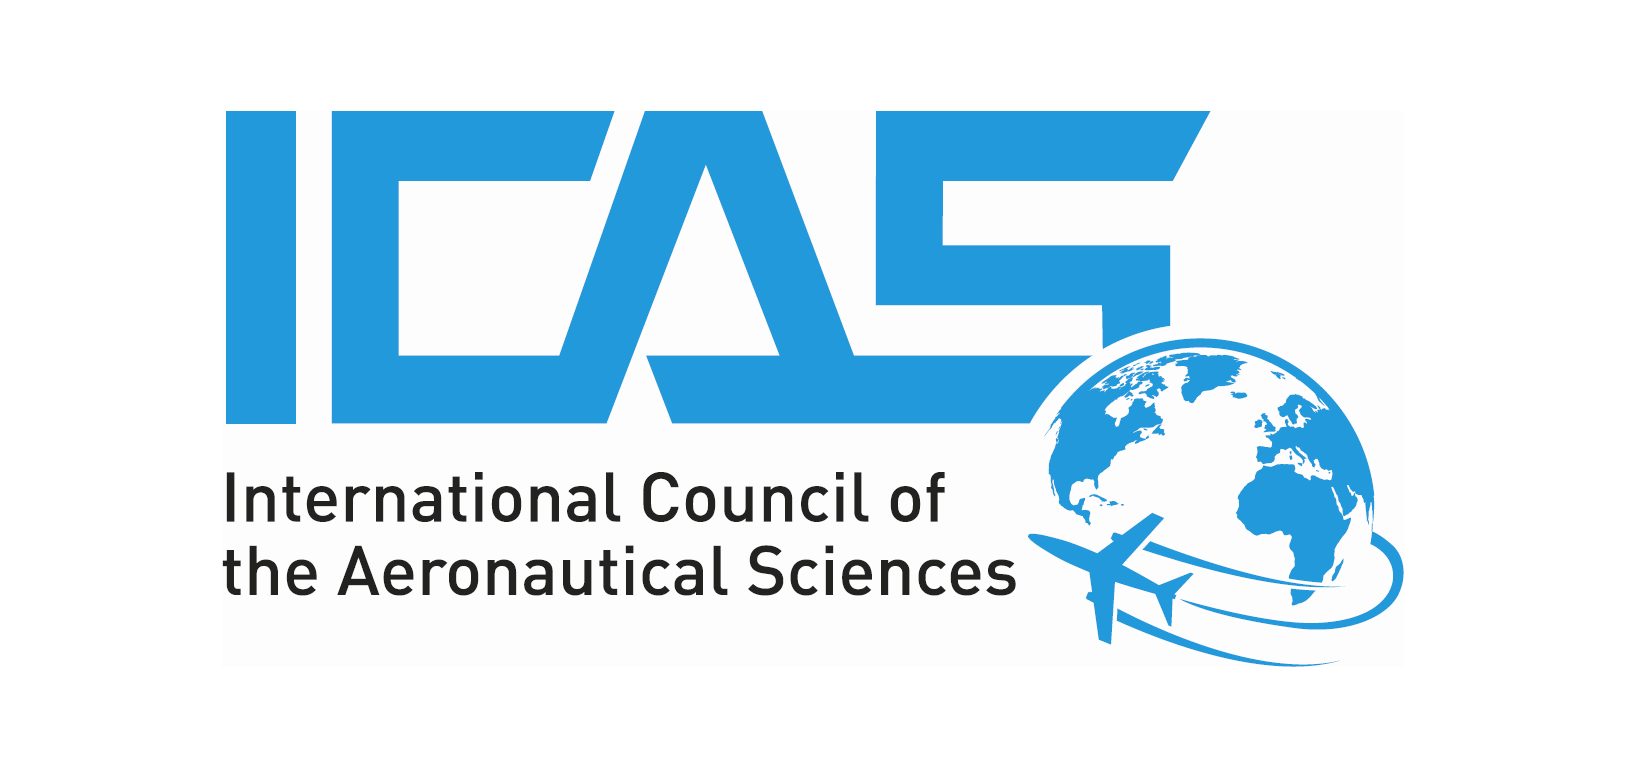 ЦАГИ принял участие в международном конгрессе ICAS 2021